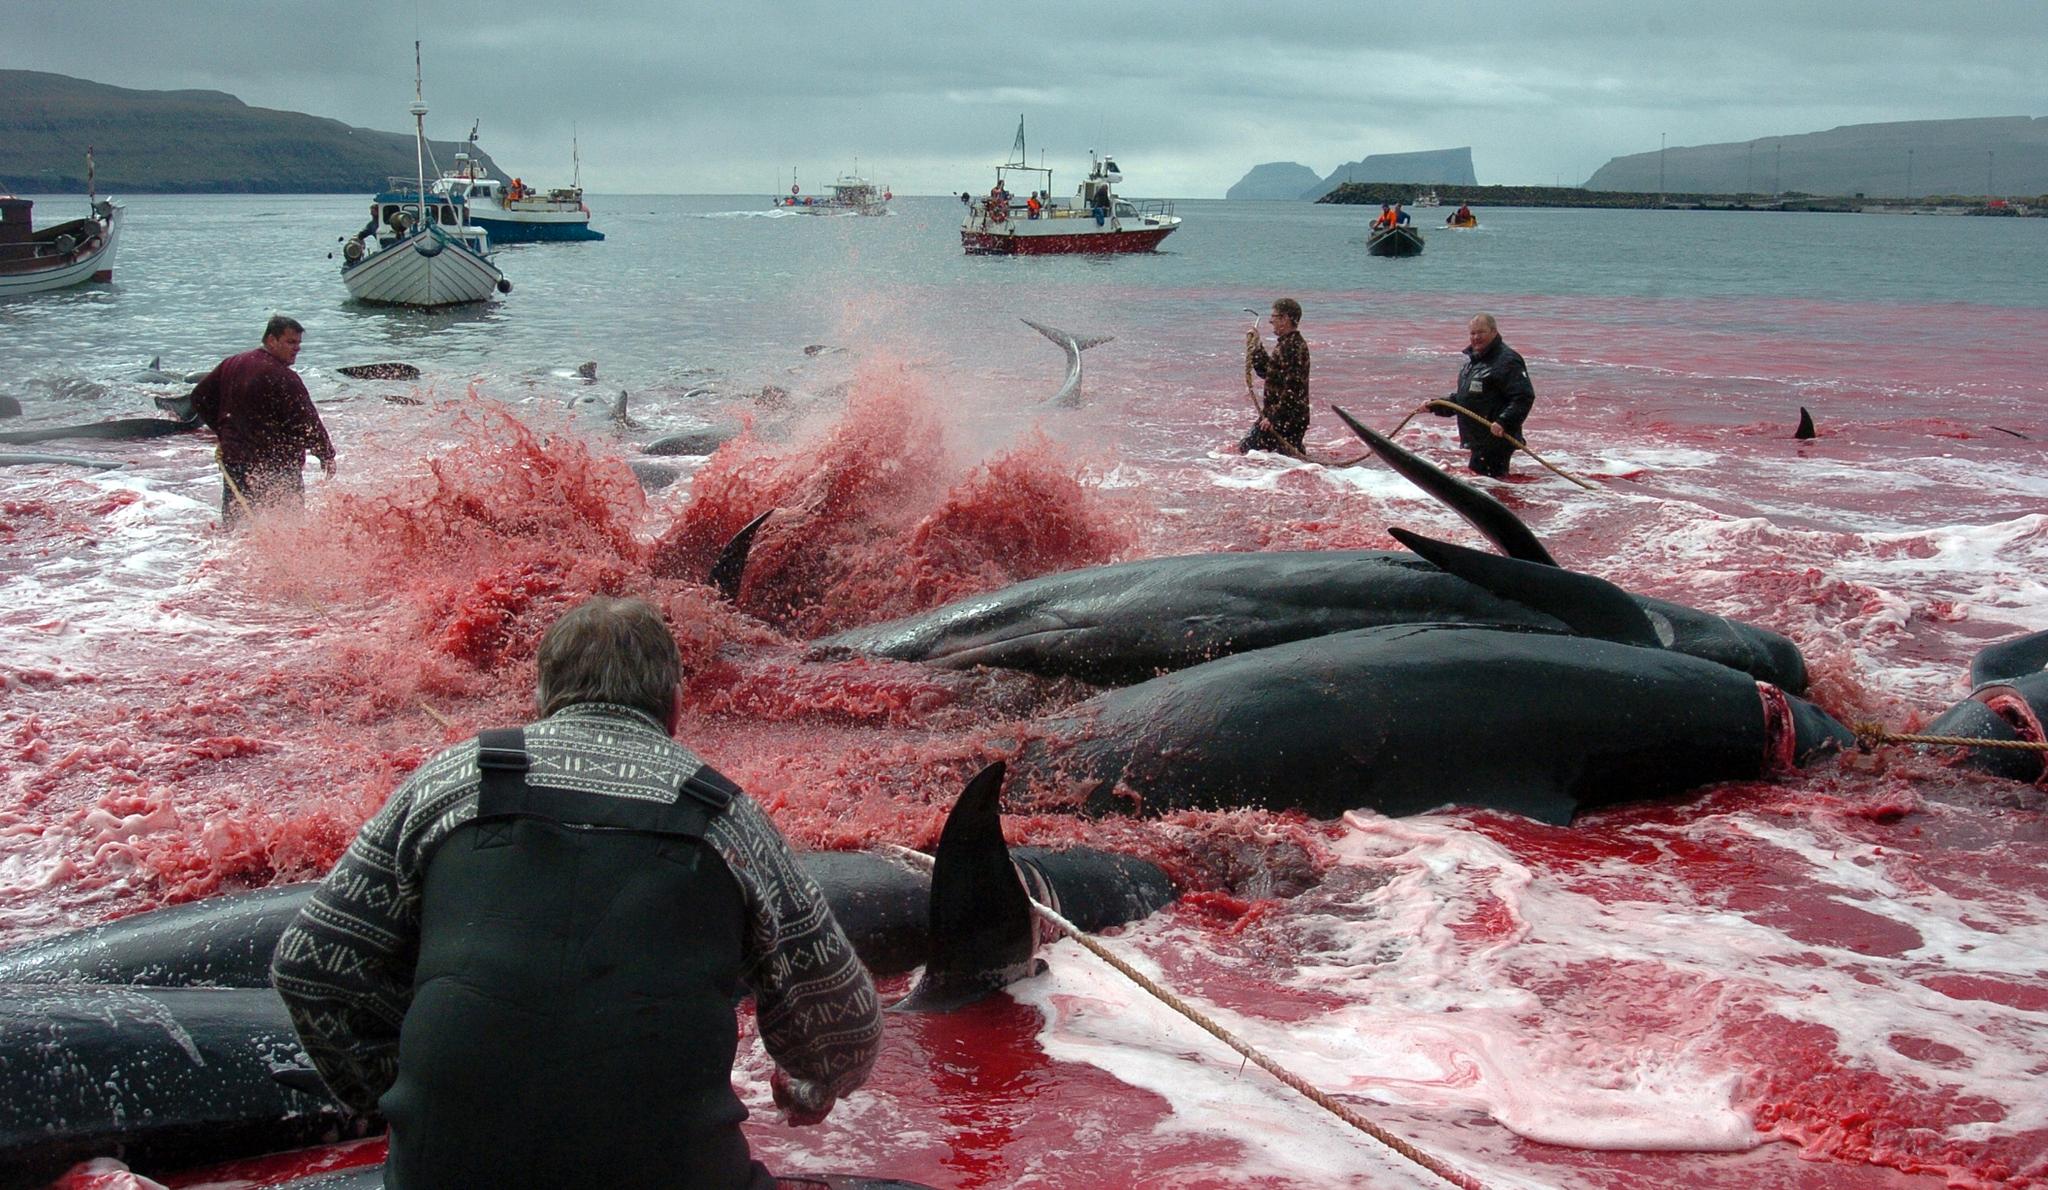 Videoen som Brasils president hevder viser «norsk-sponset hvalfangst», viser etter alt å dømme et færøysk «grindadrap» - en hvafangstmetode som har vært i bruk på øyene i mange hundre år.